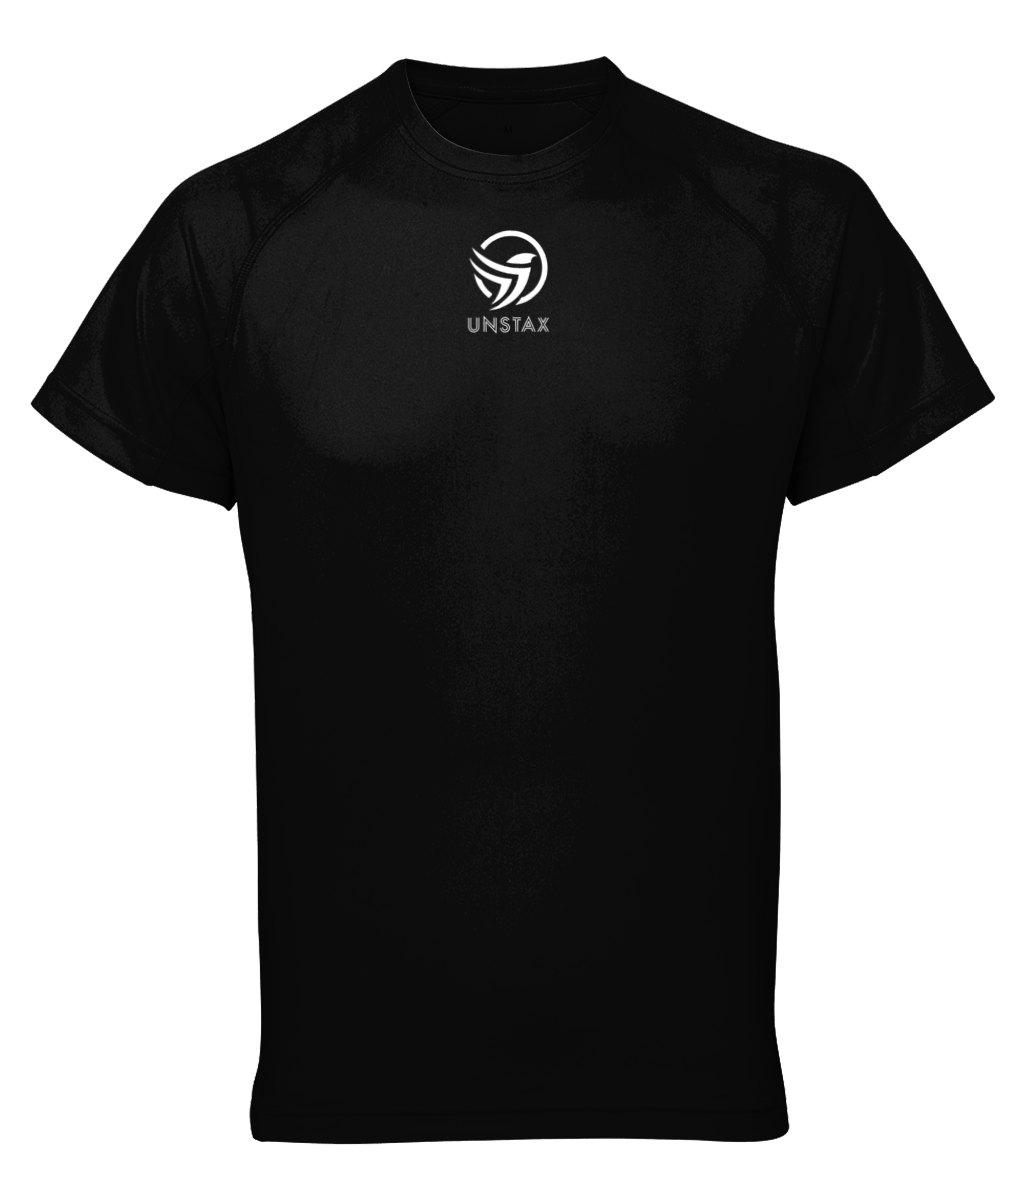 Unstax Dri-fit Performance Men's T-Shirt